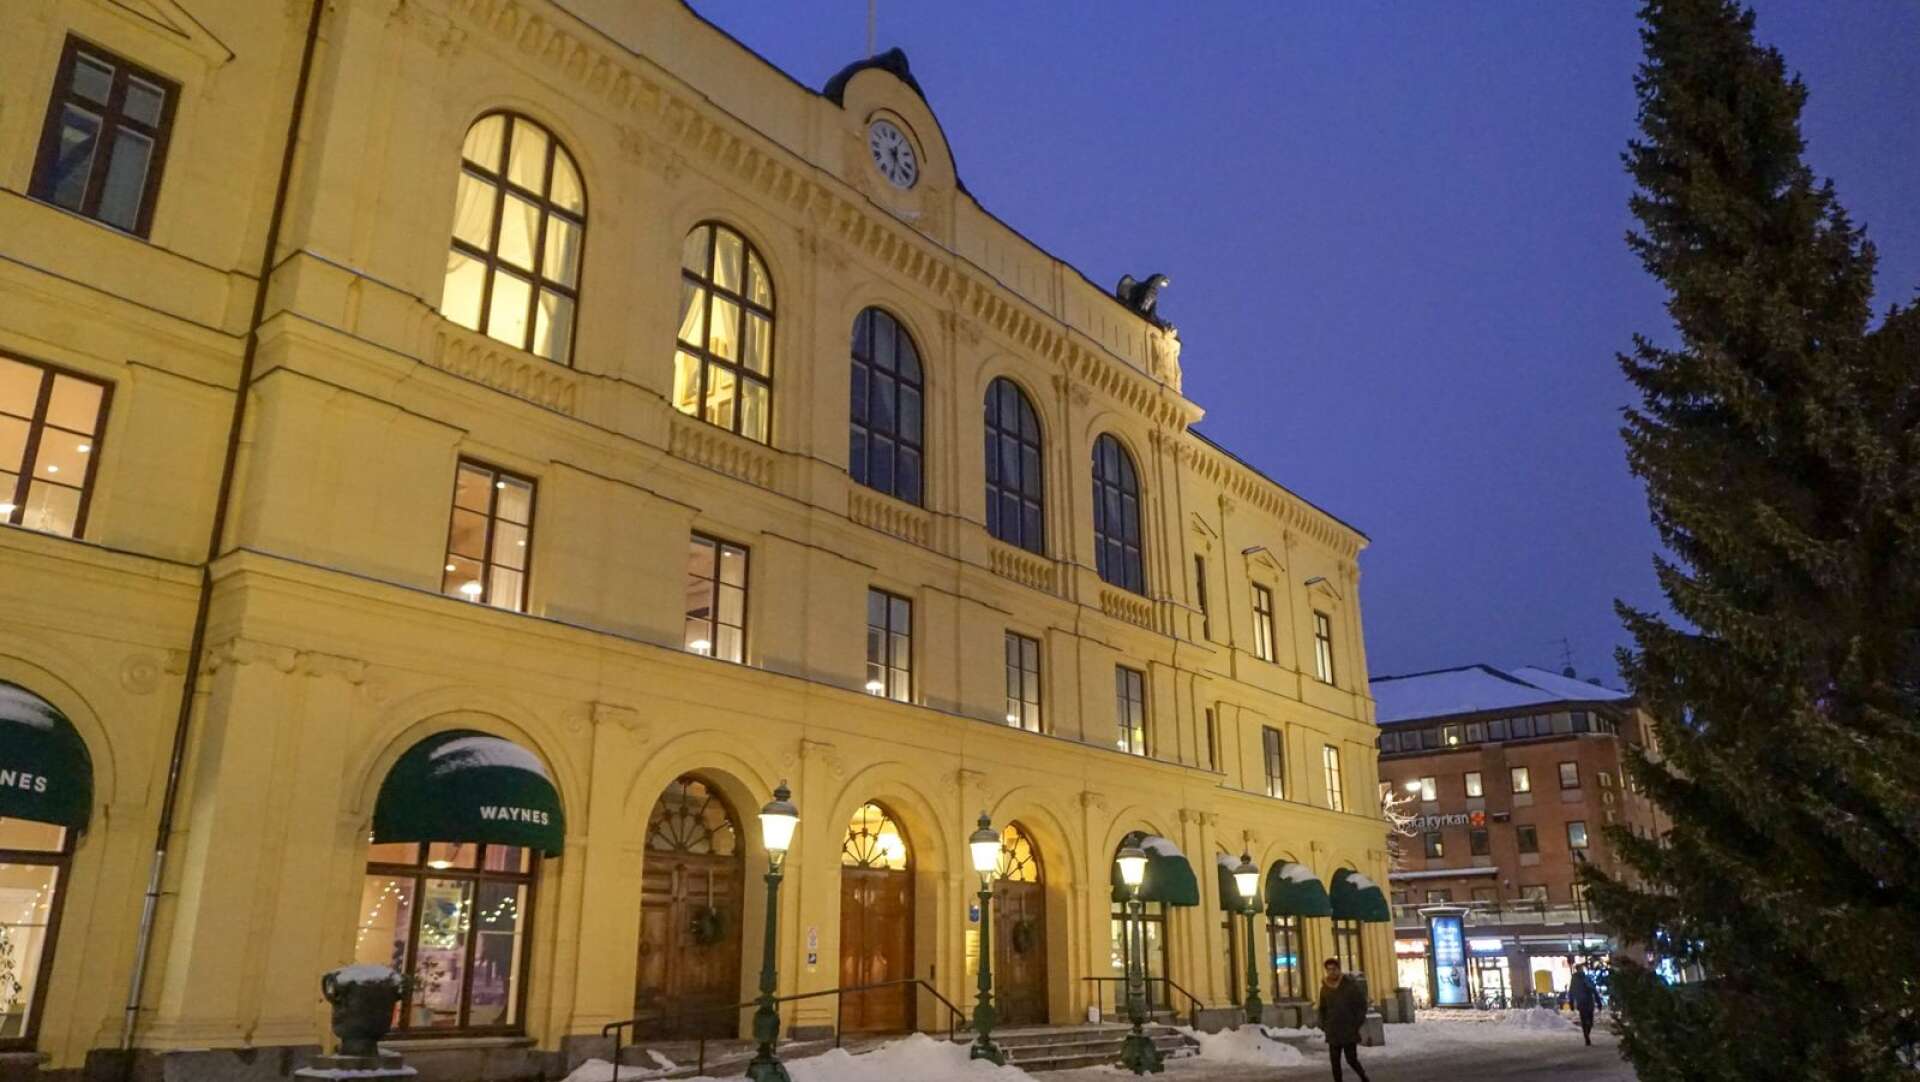 Fyra tonårsflickor har åtalats vid Värmlands tingsrätt misstänkta för att ha misshandlat ytterligare en elev vid ett gymnasium i Karlstad.
